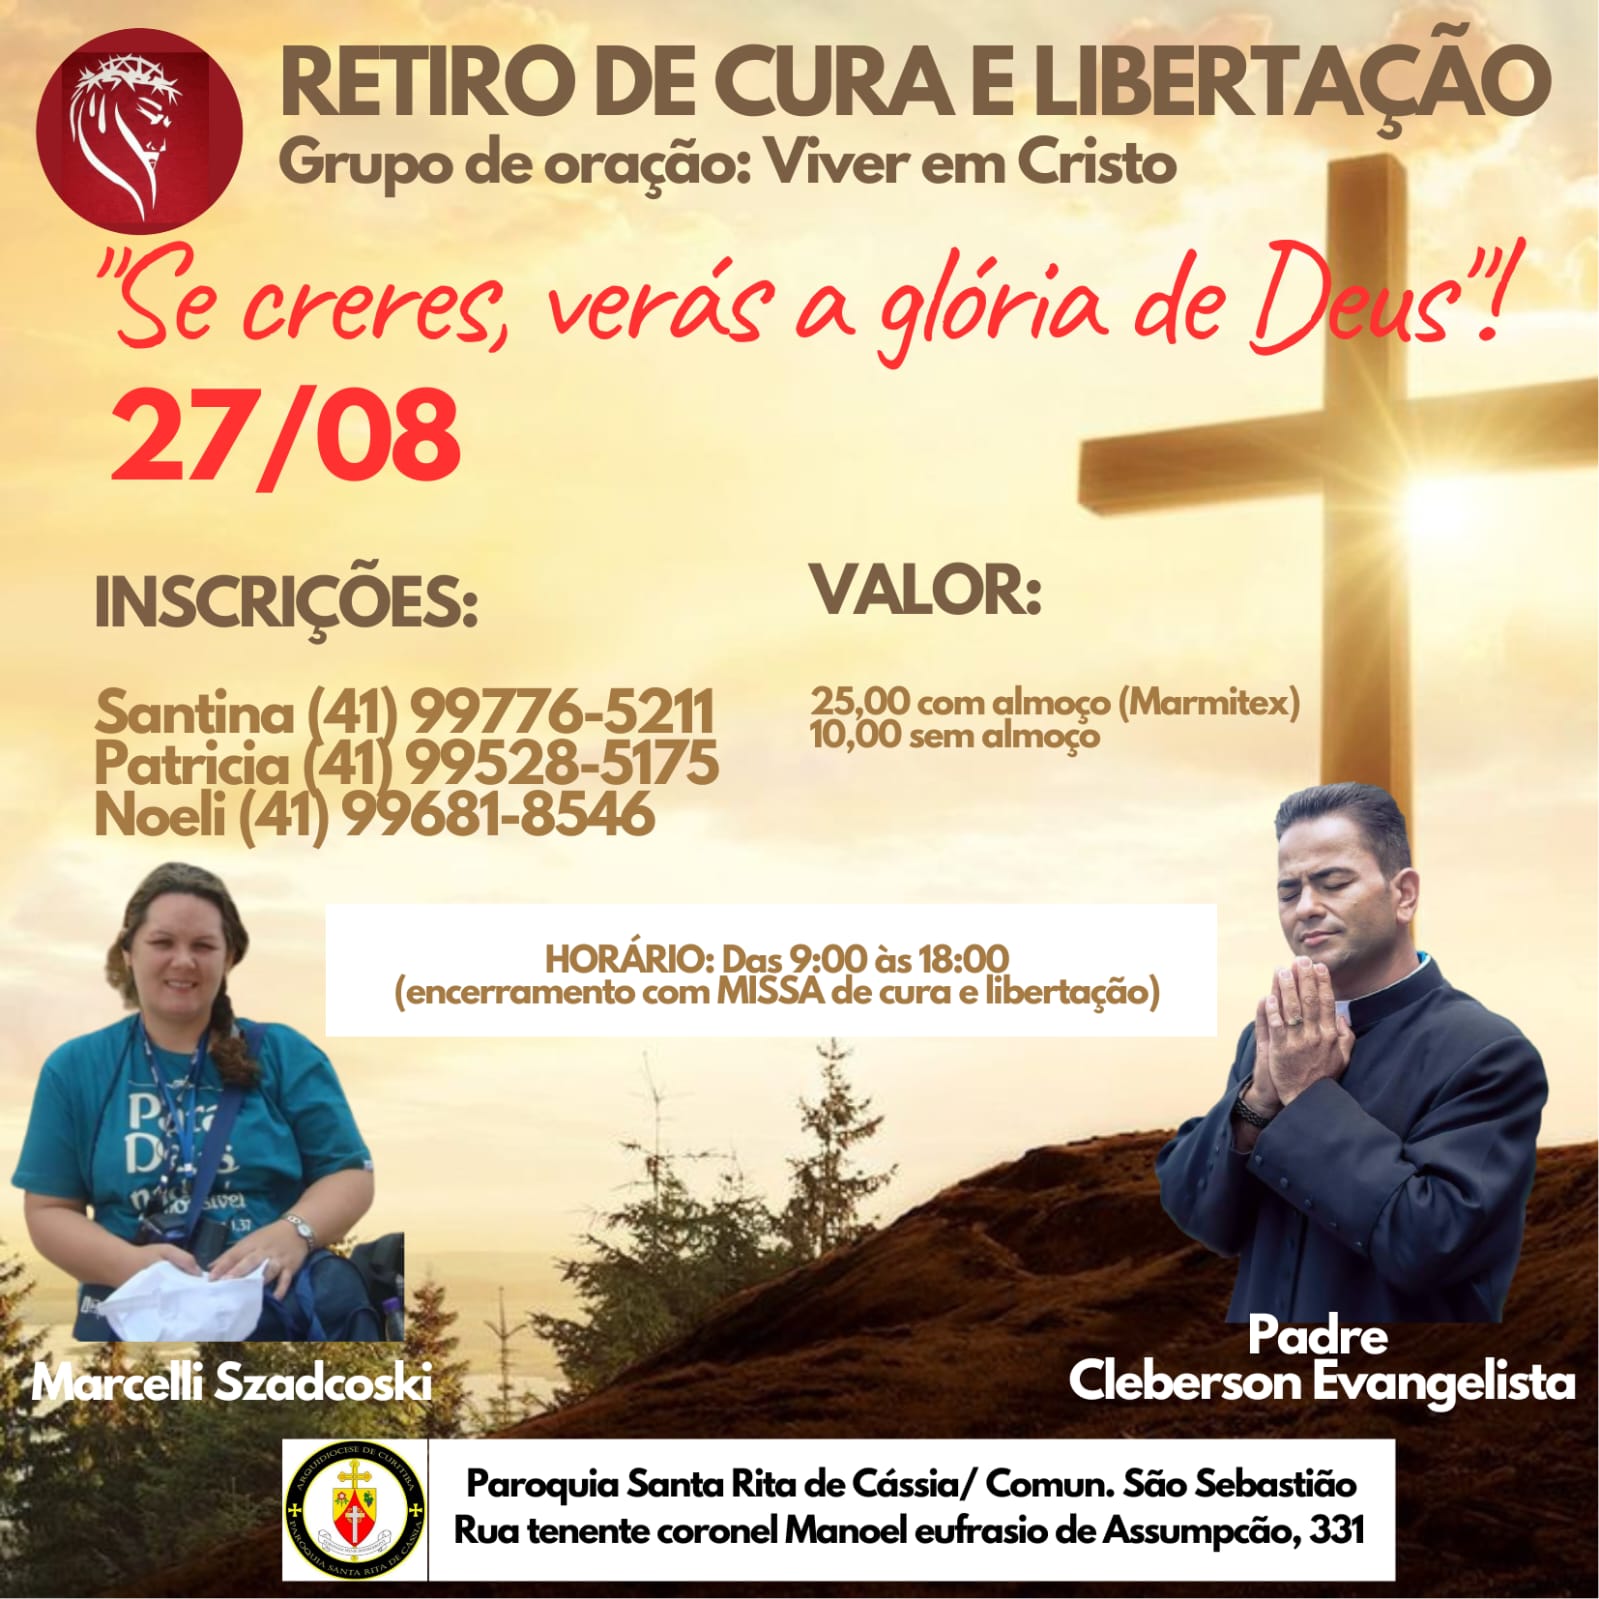 Retiro de Cura e Libertação em Curitiba